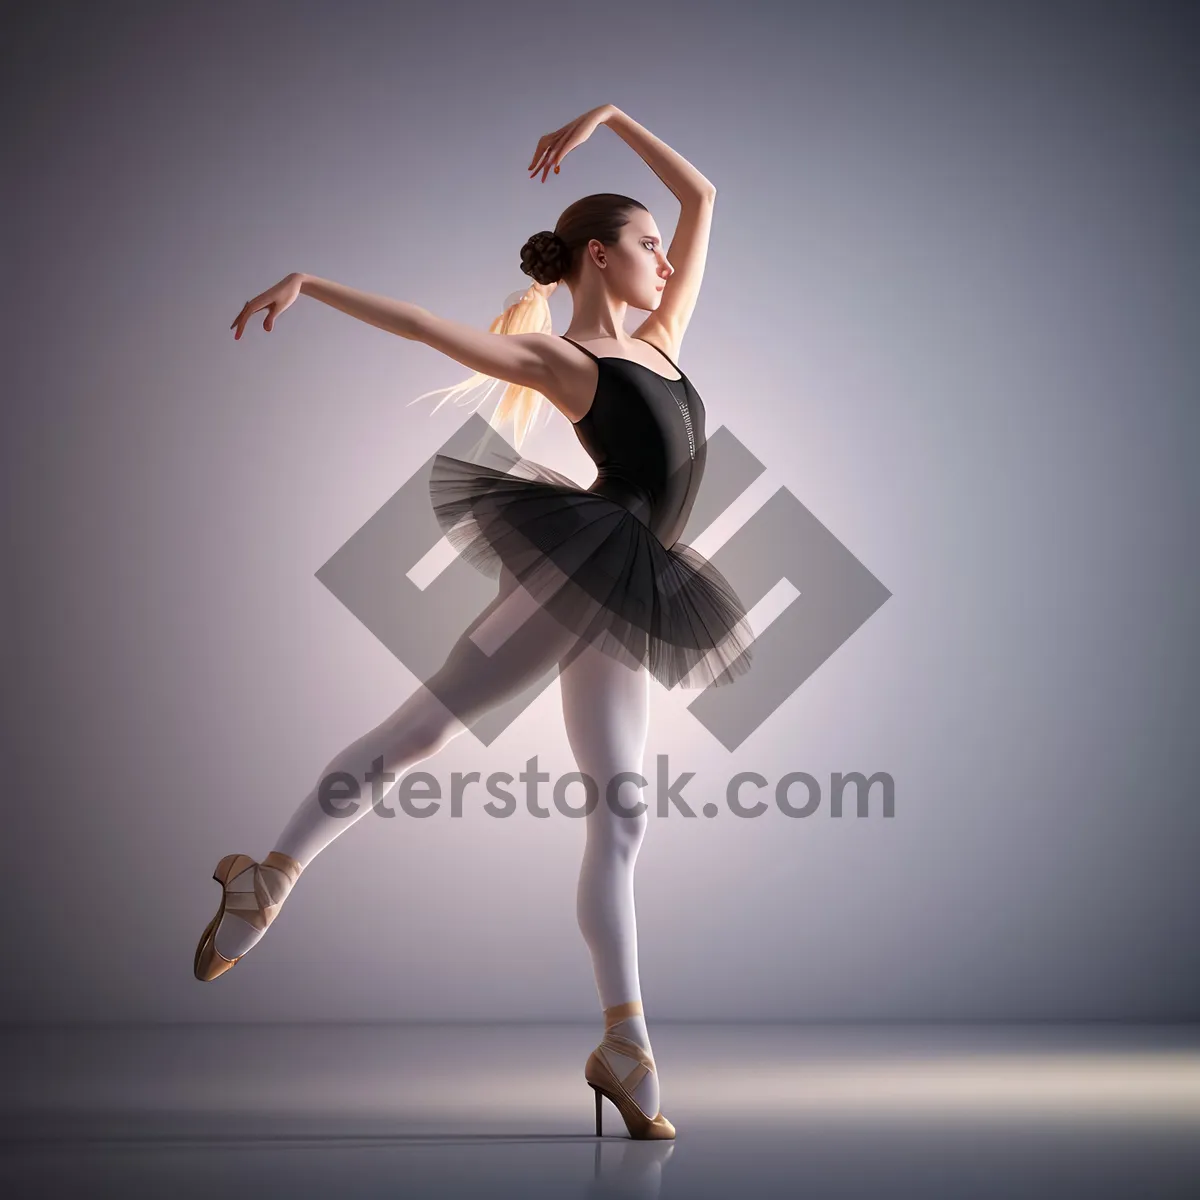 Picture of Graceful Ballet Pose: Elegant Dancer in Motion